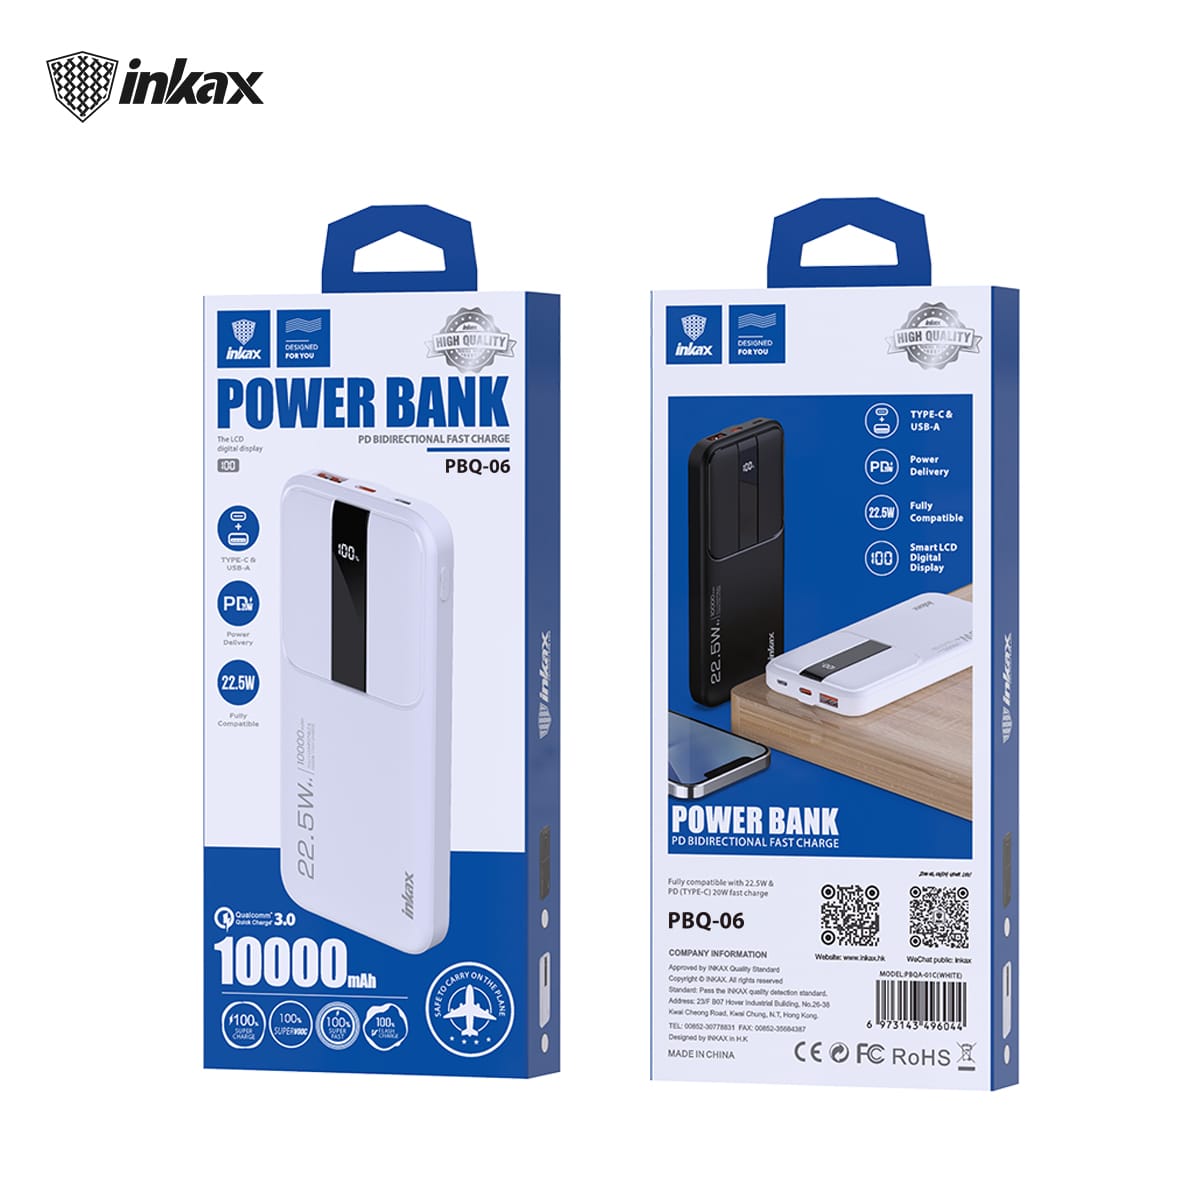 Inkax 10000mAh Power Bank - Black